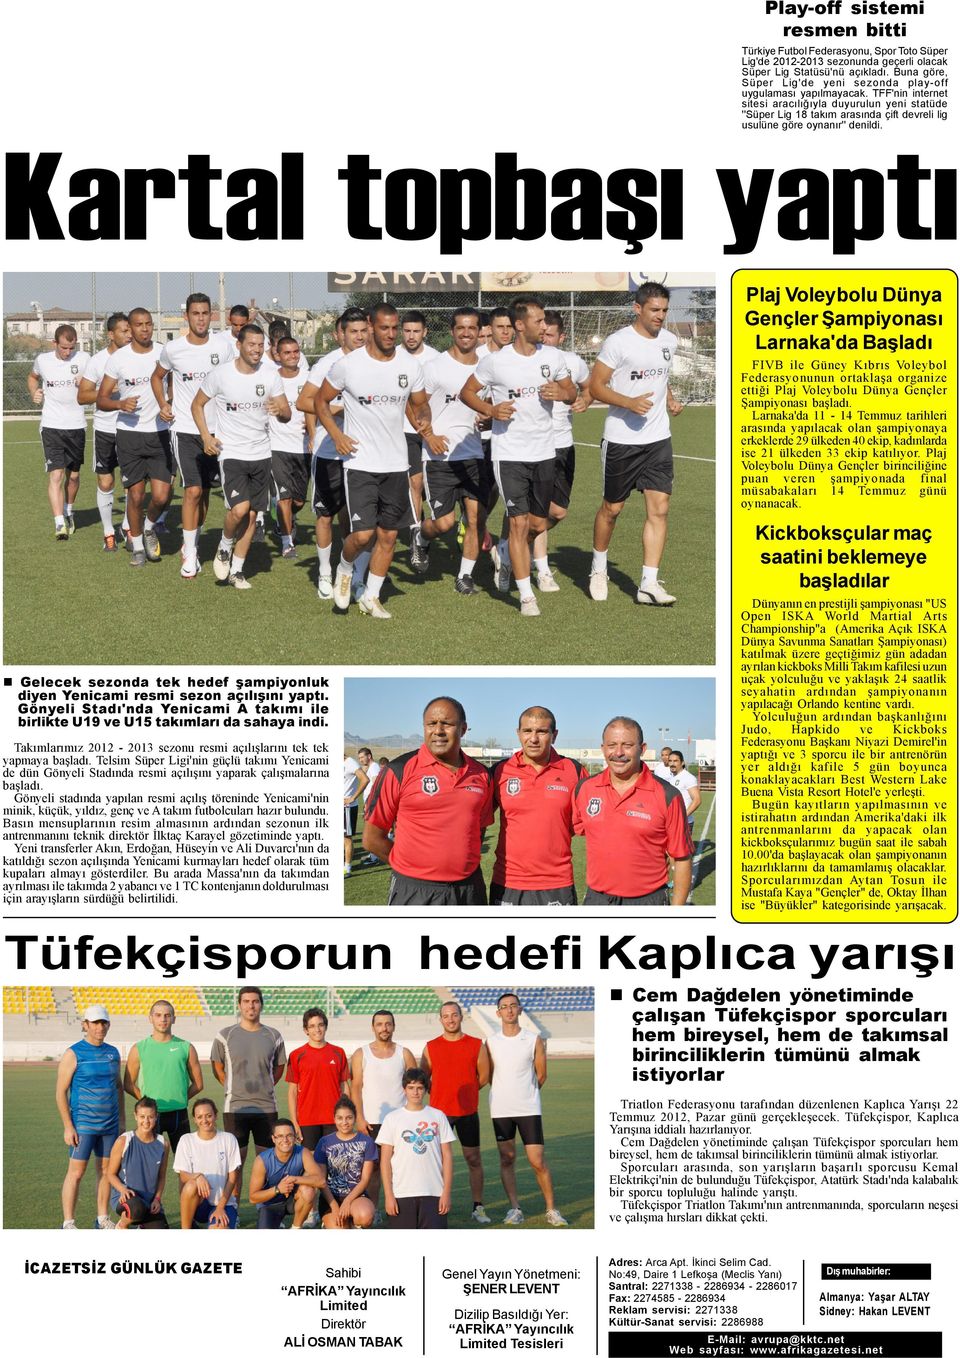 TFF'nin internet sitesi aracýlýðýyla duyurulun yeni statüde ''Süper Lig 18 takým arasýnda çift devreli lig usulüne göre oynanýr'' denildi.